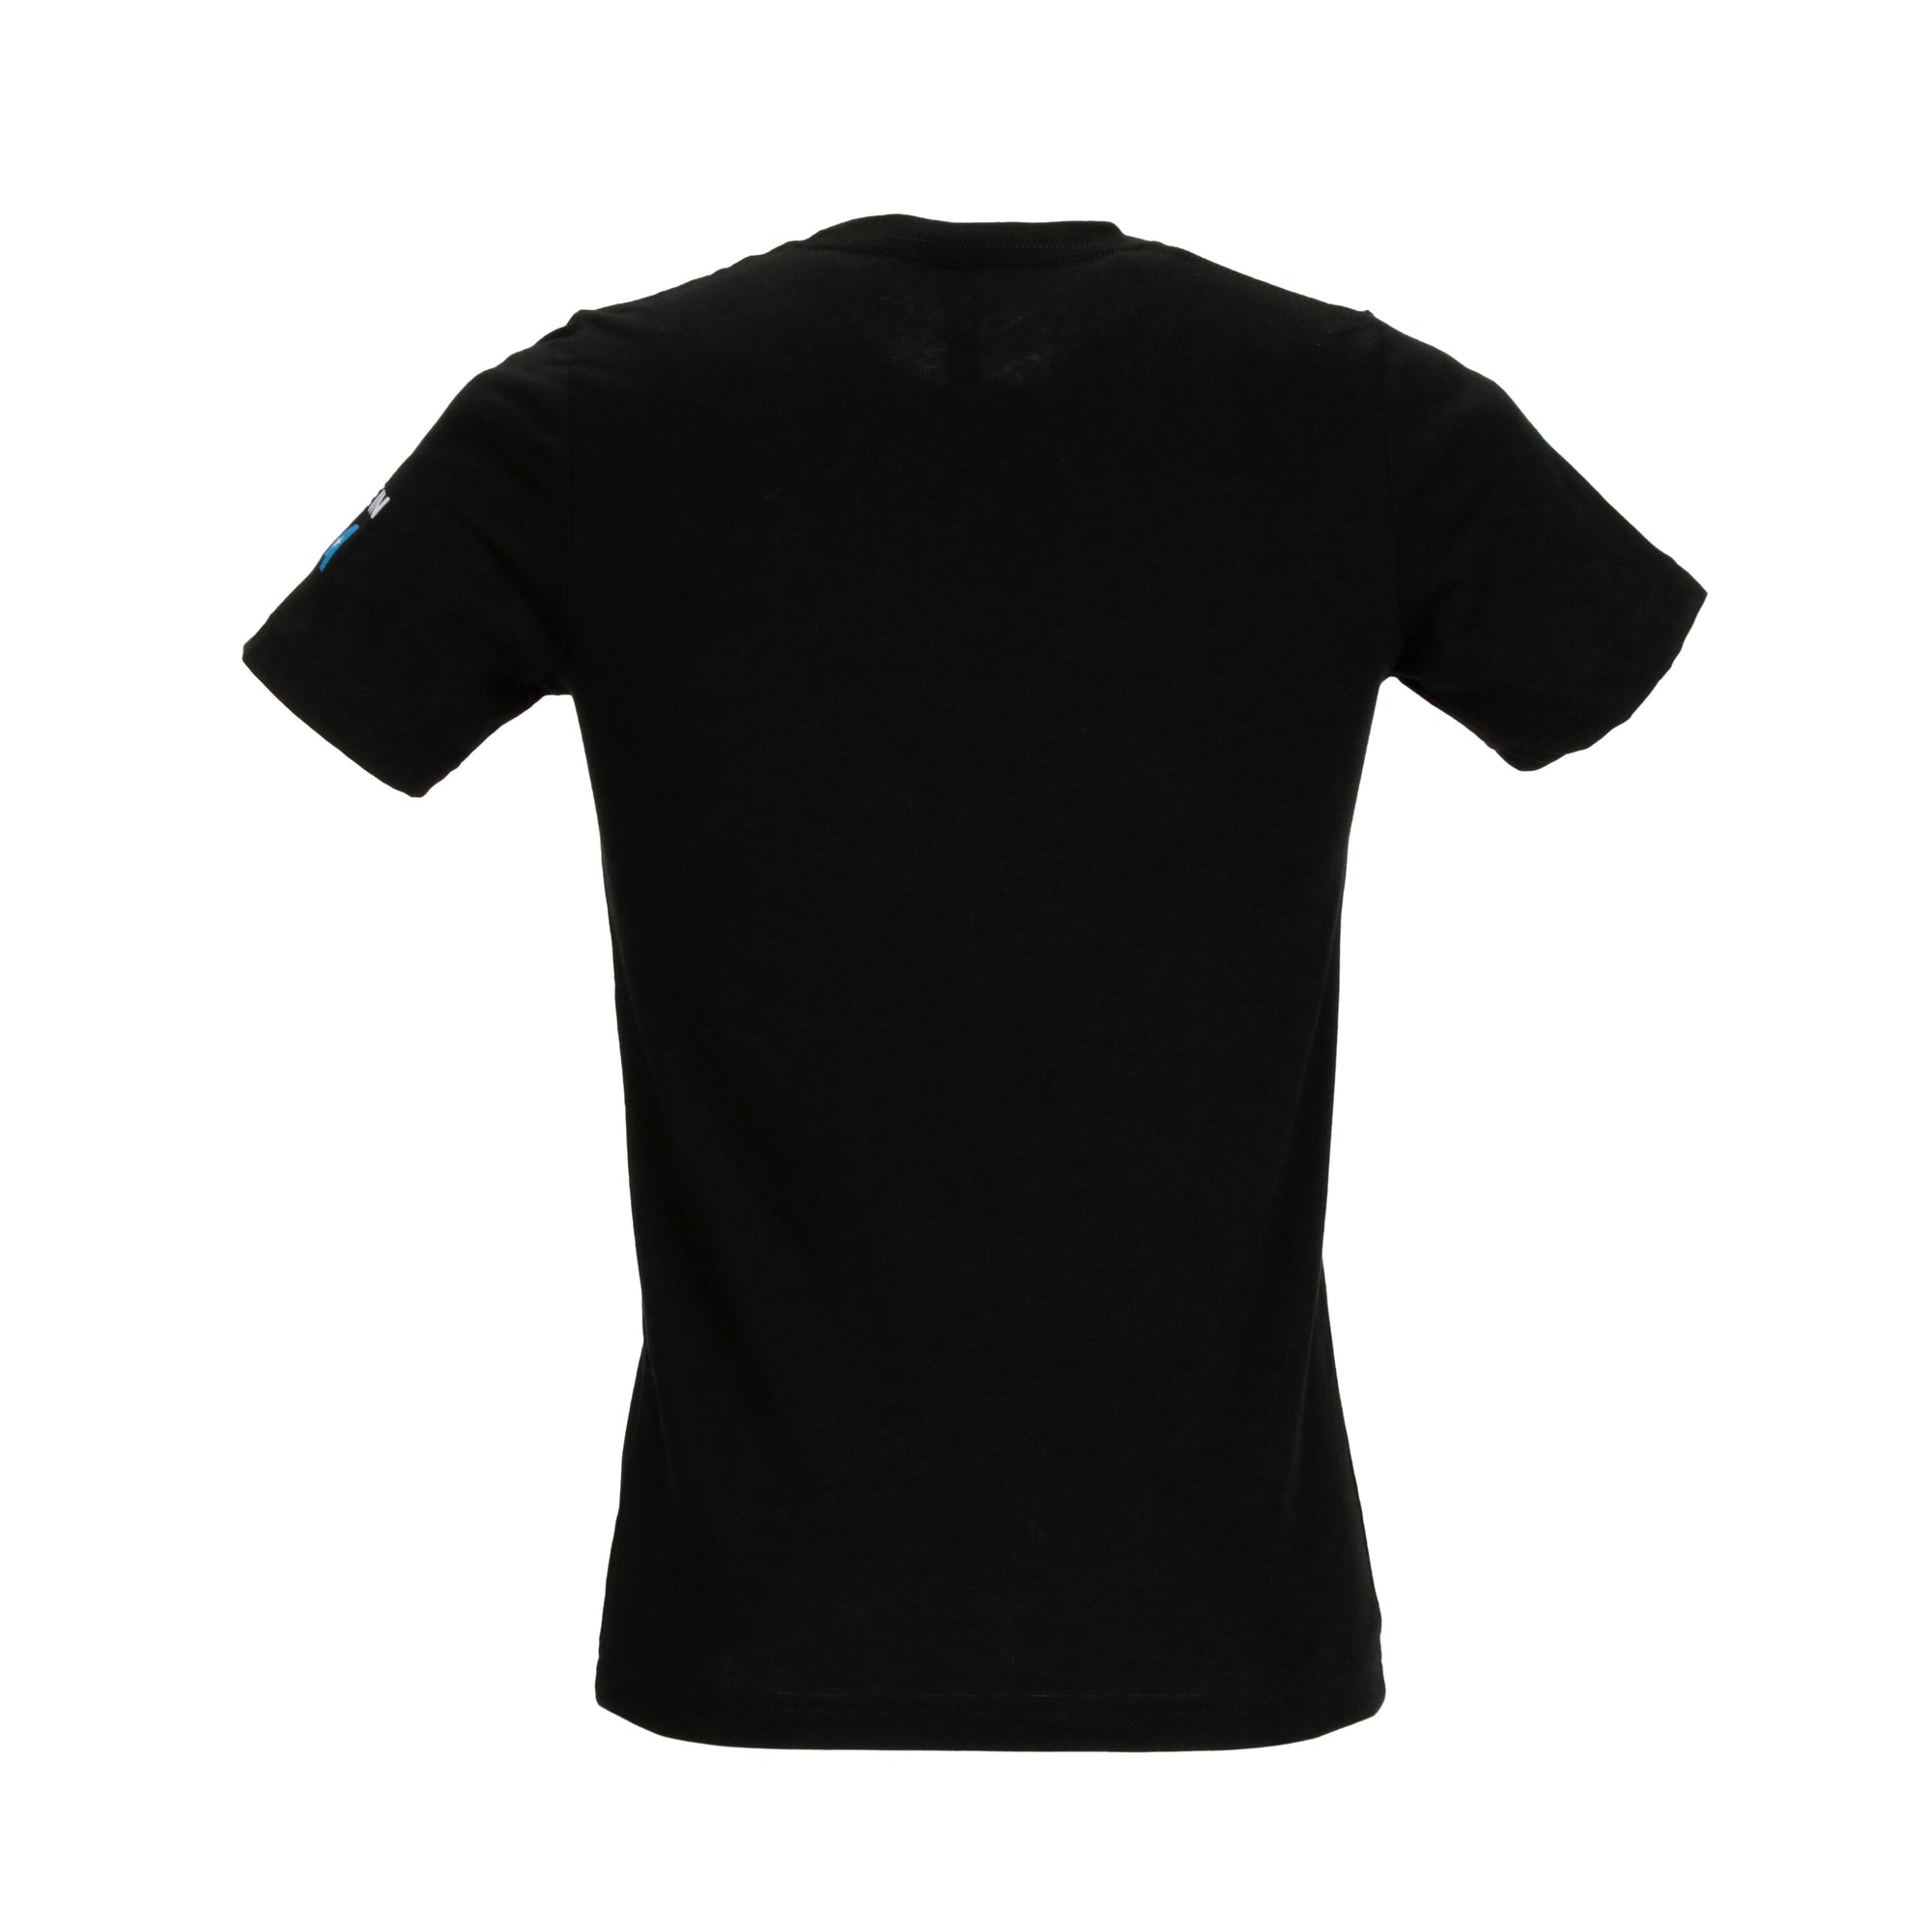 BlueChew® Branded T-Shirt